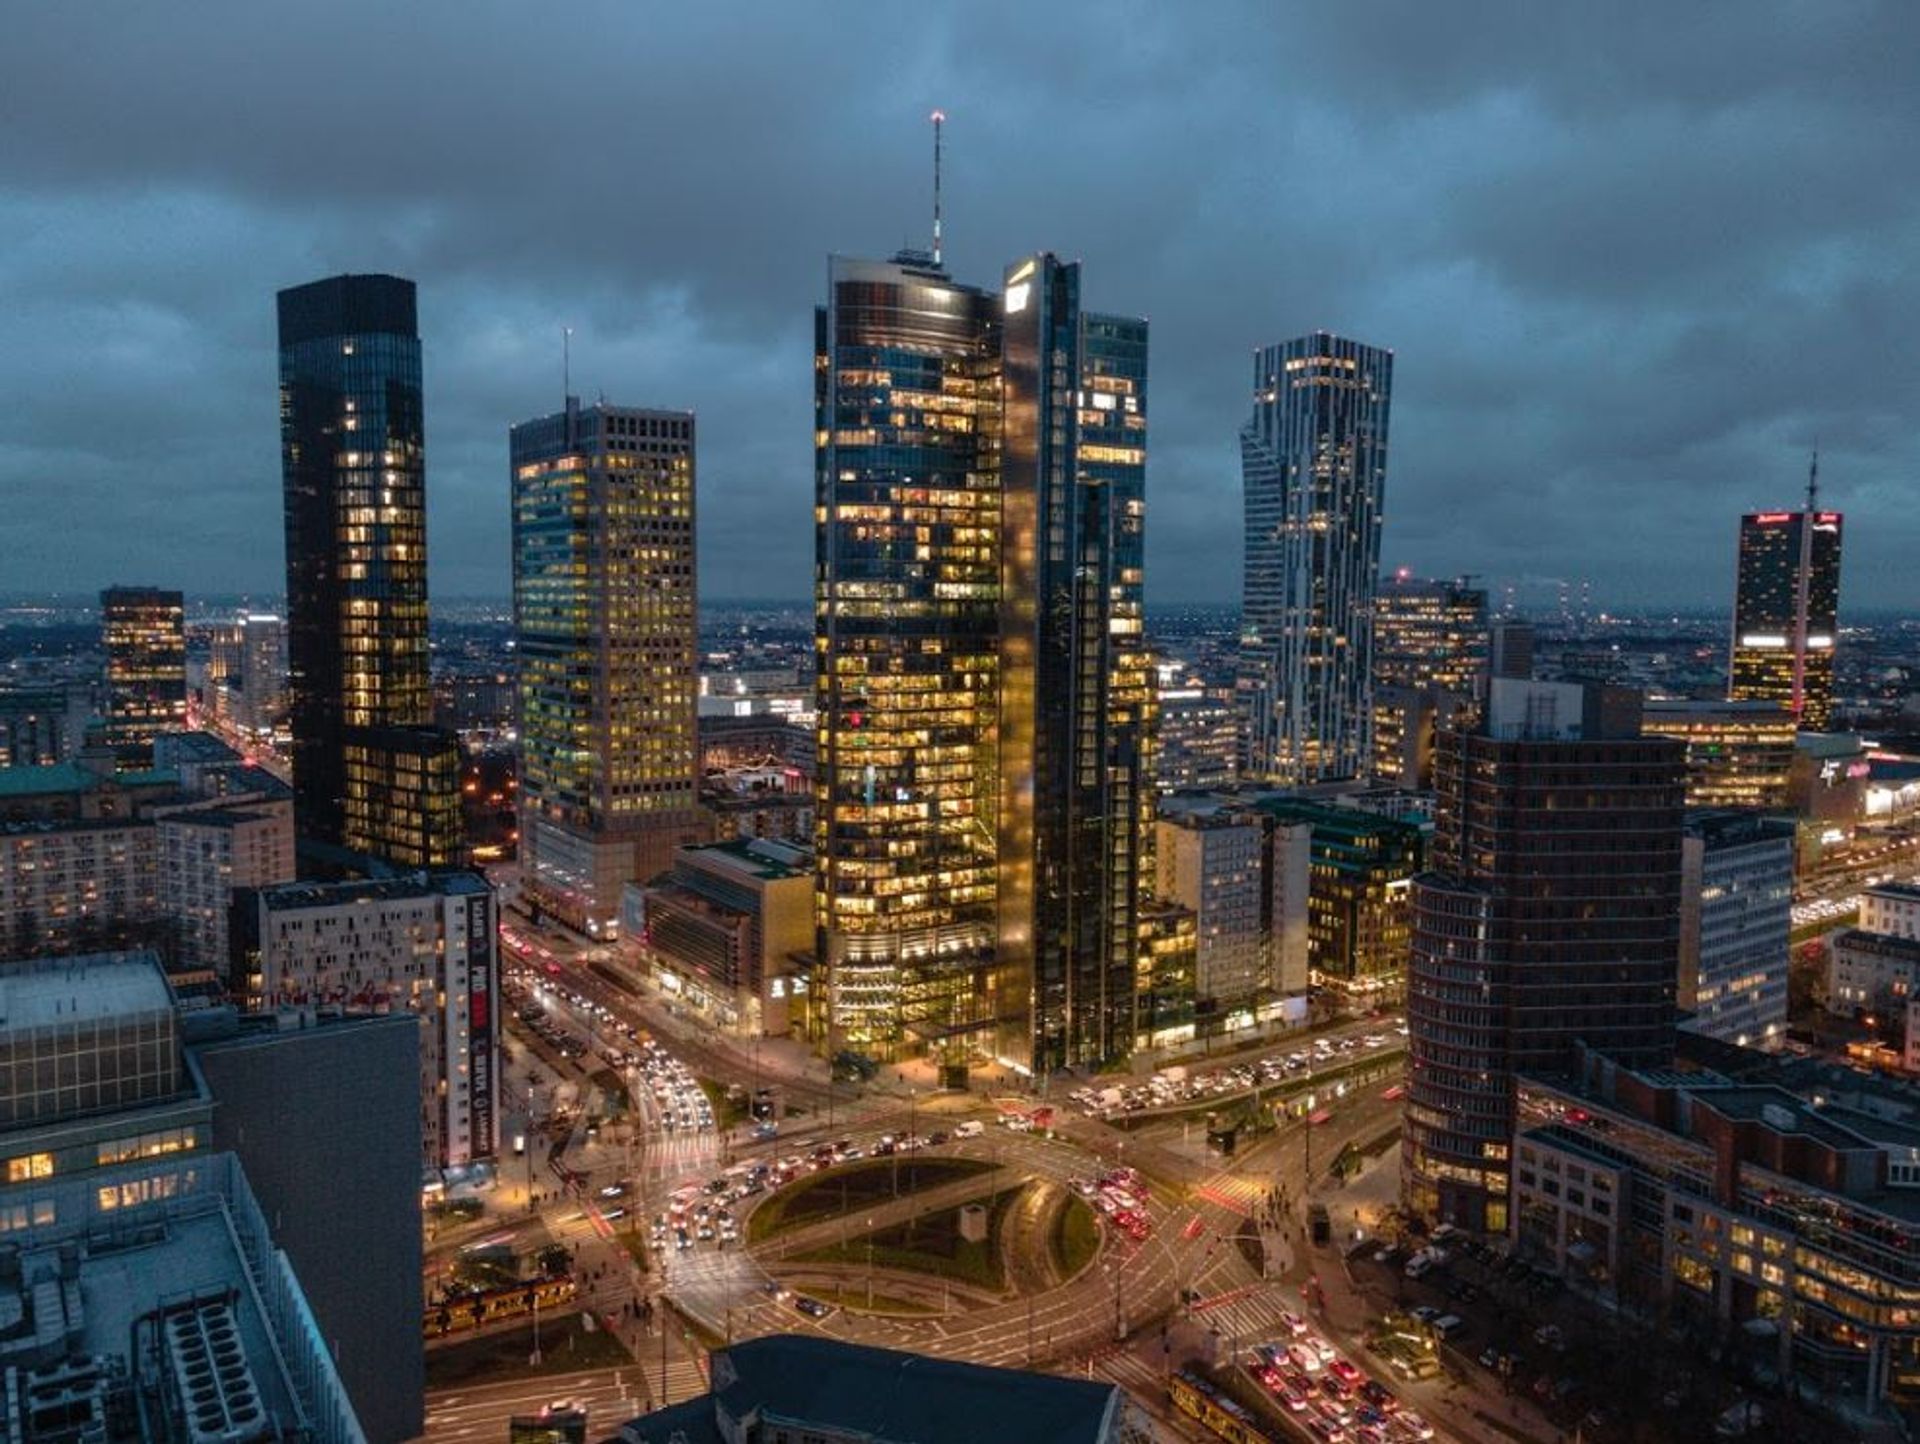 Aktywność deweloperska na rynku biurowym w Warszawie ostro hamuje